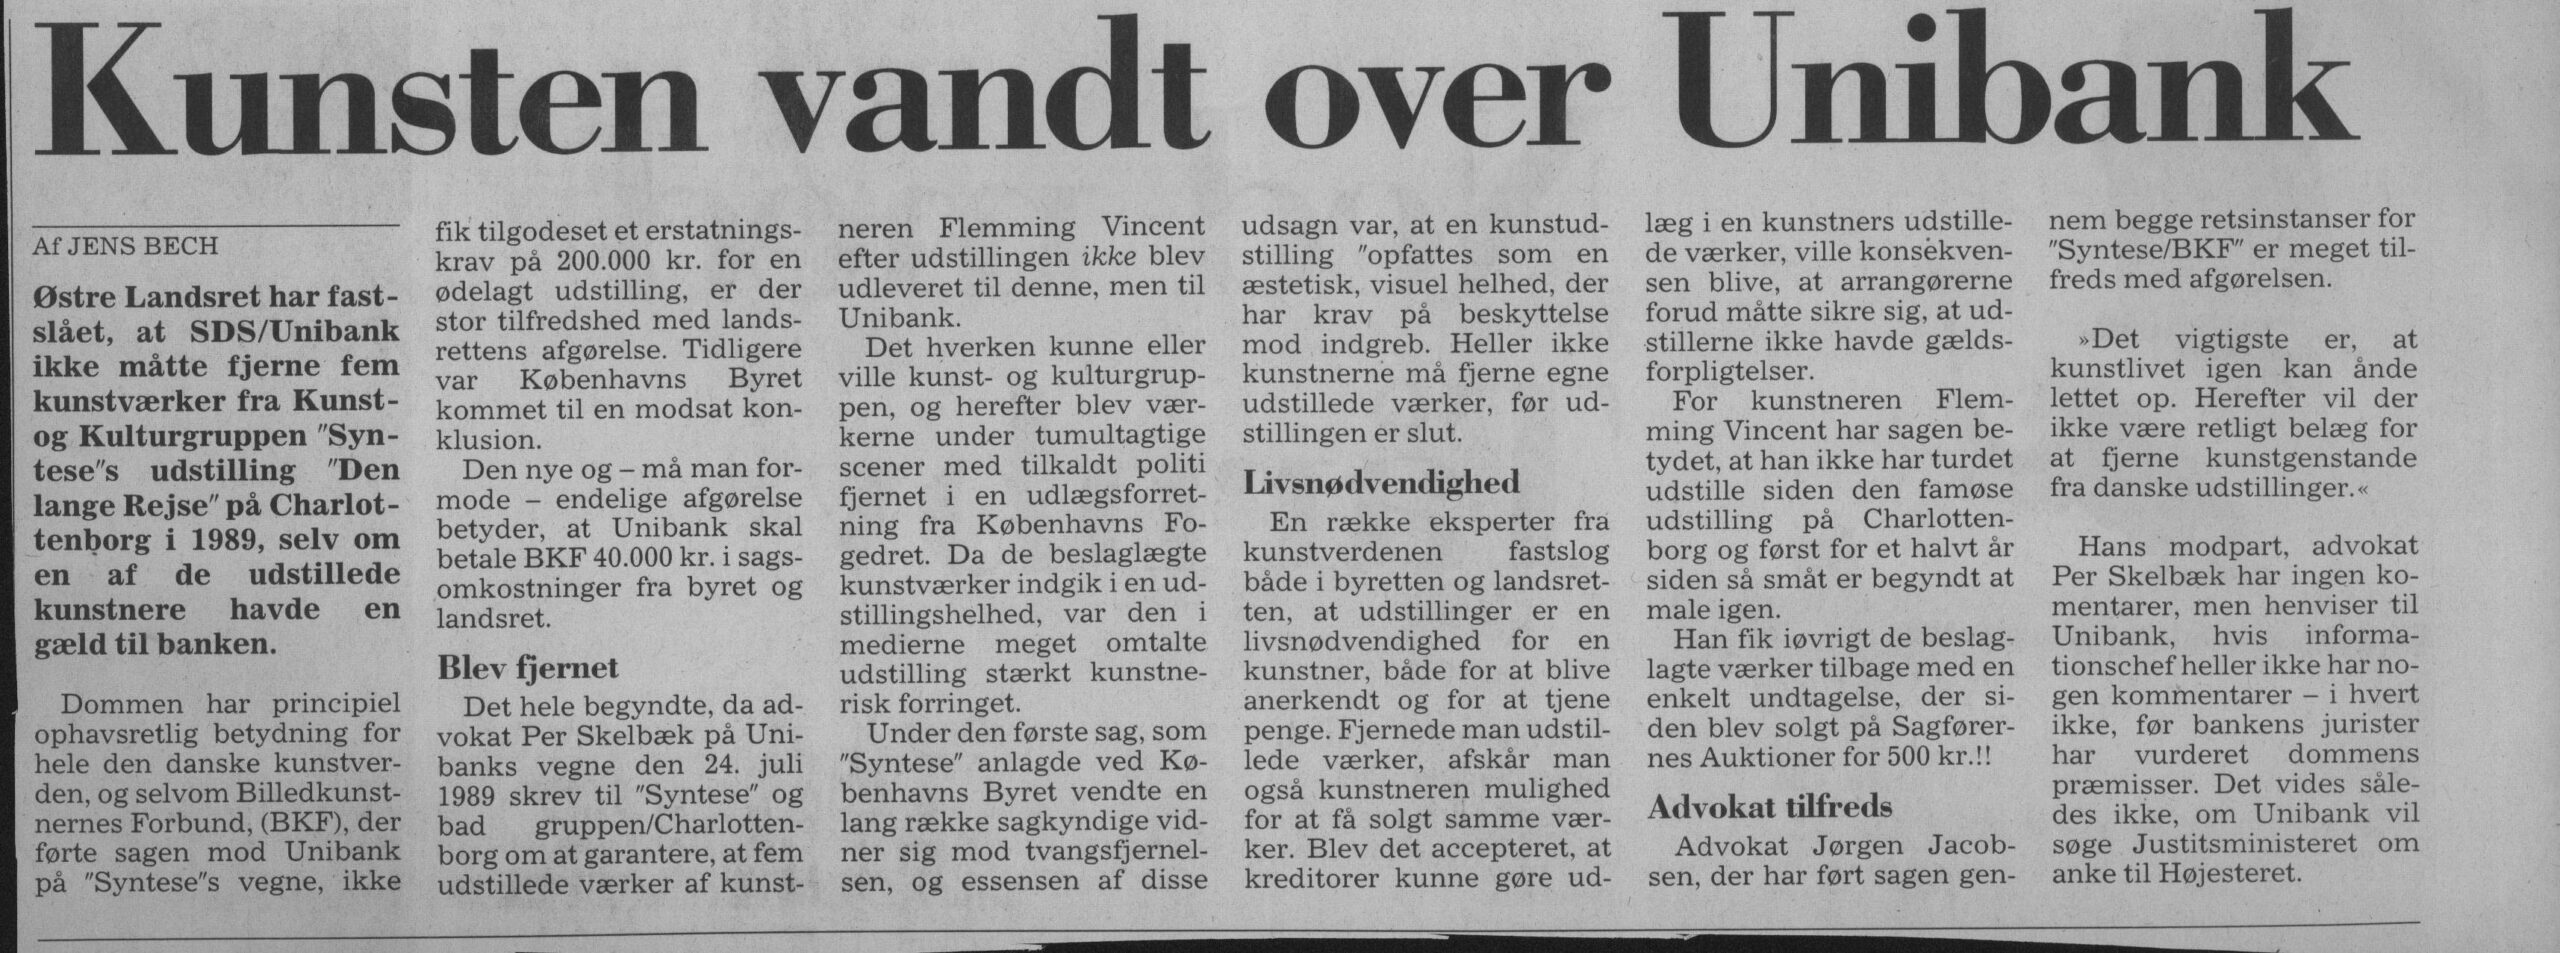 Kunsten vandt over Unibank. Omtale (Retssag. Den lange rejse, Charlottenborg, København 1989). Jens Bech. Jyllands-Posten. Medio marts 1993.